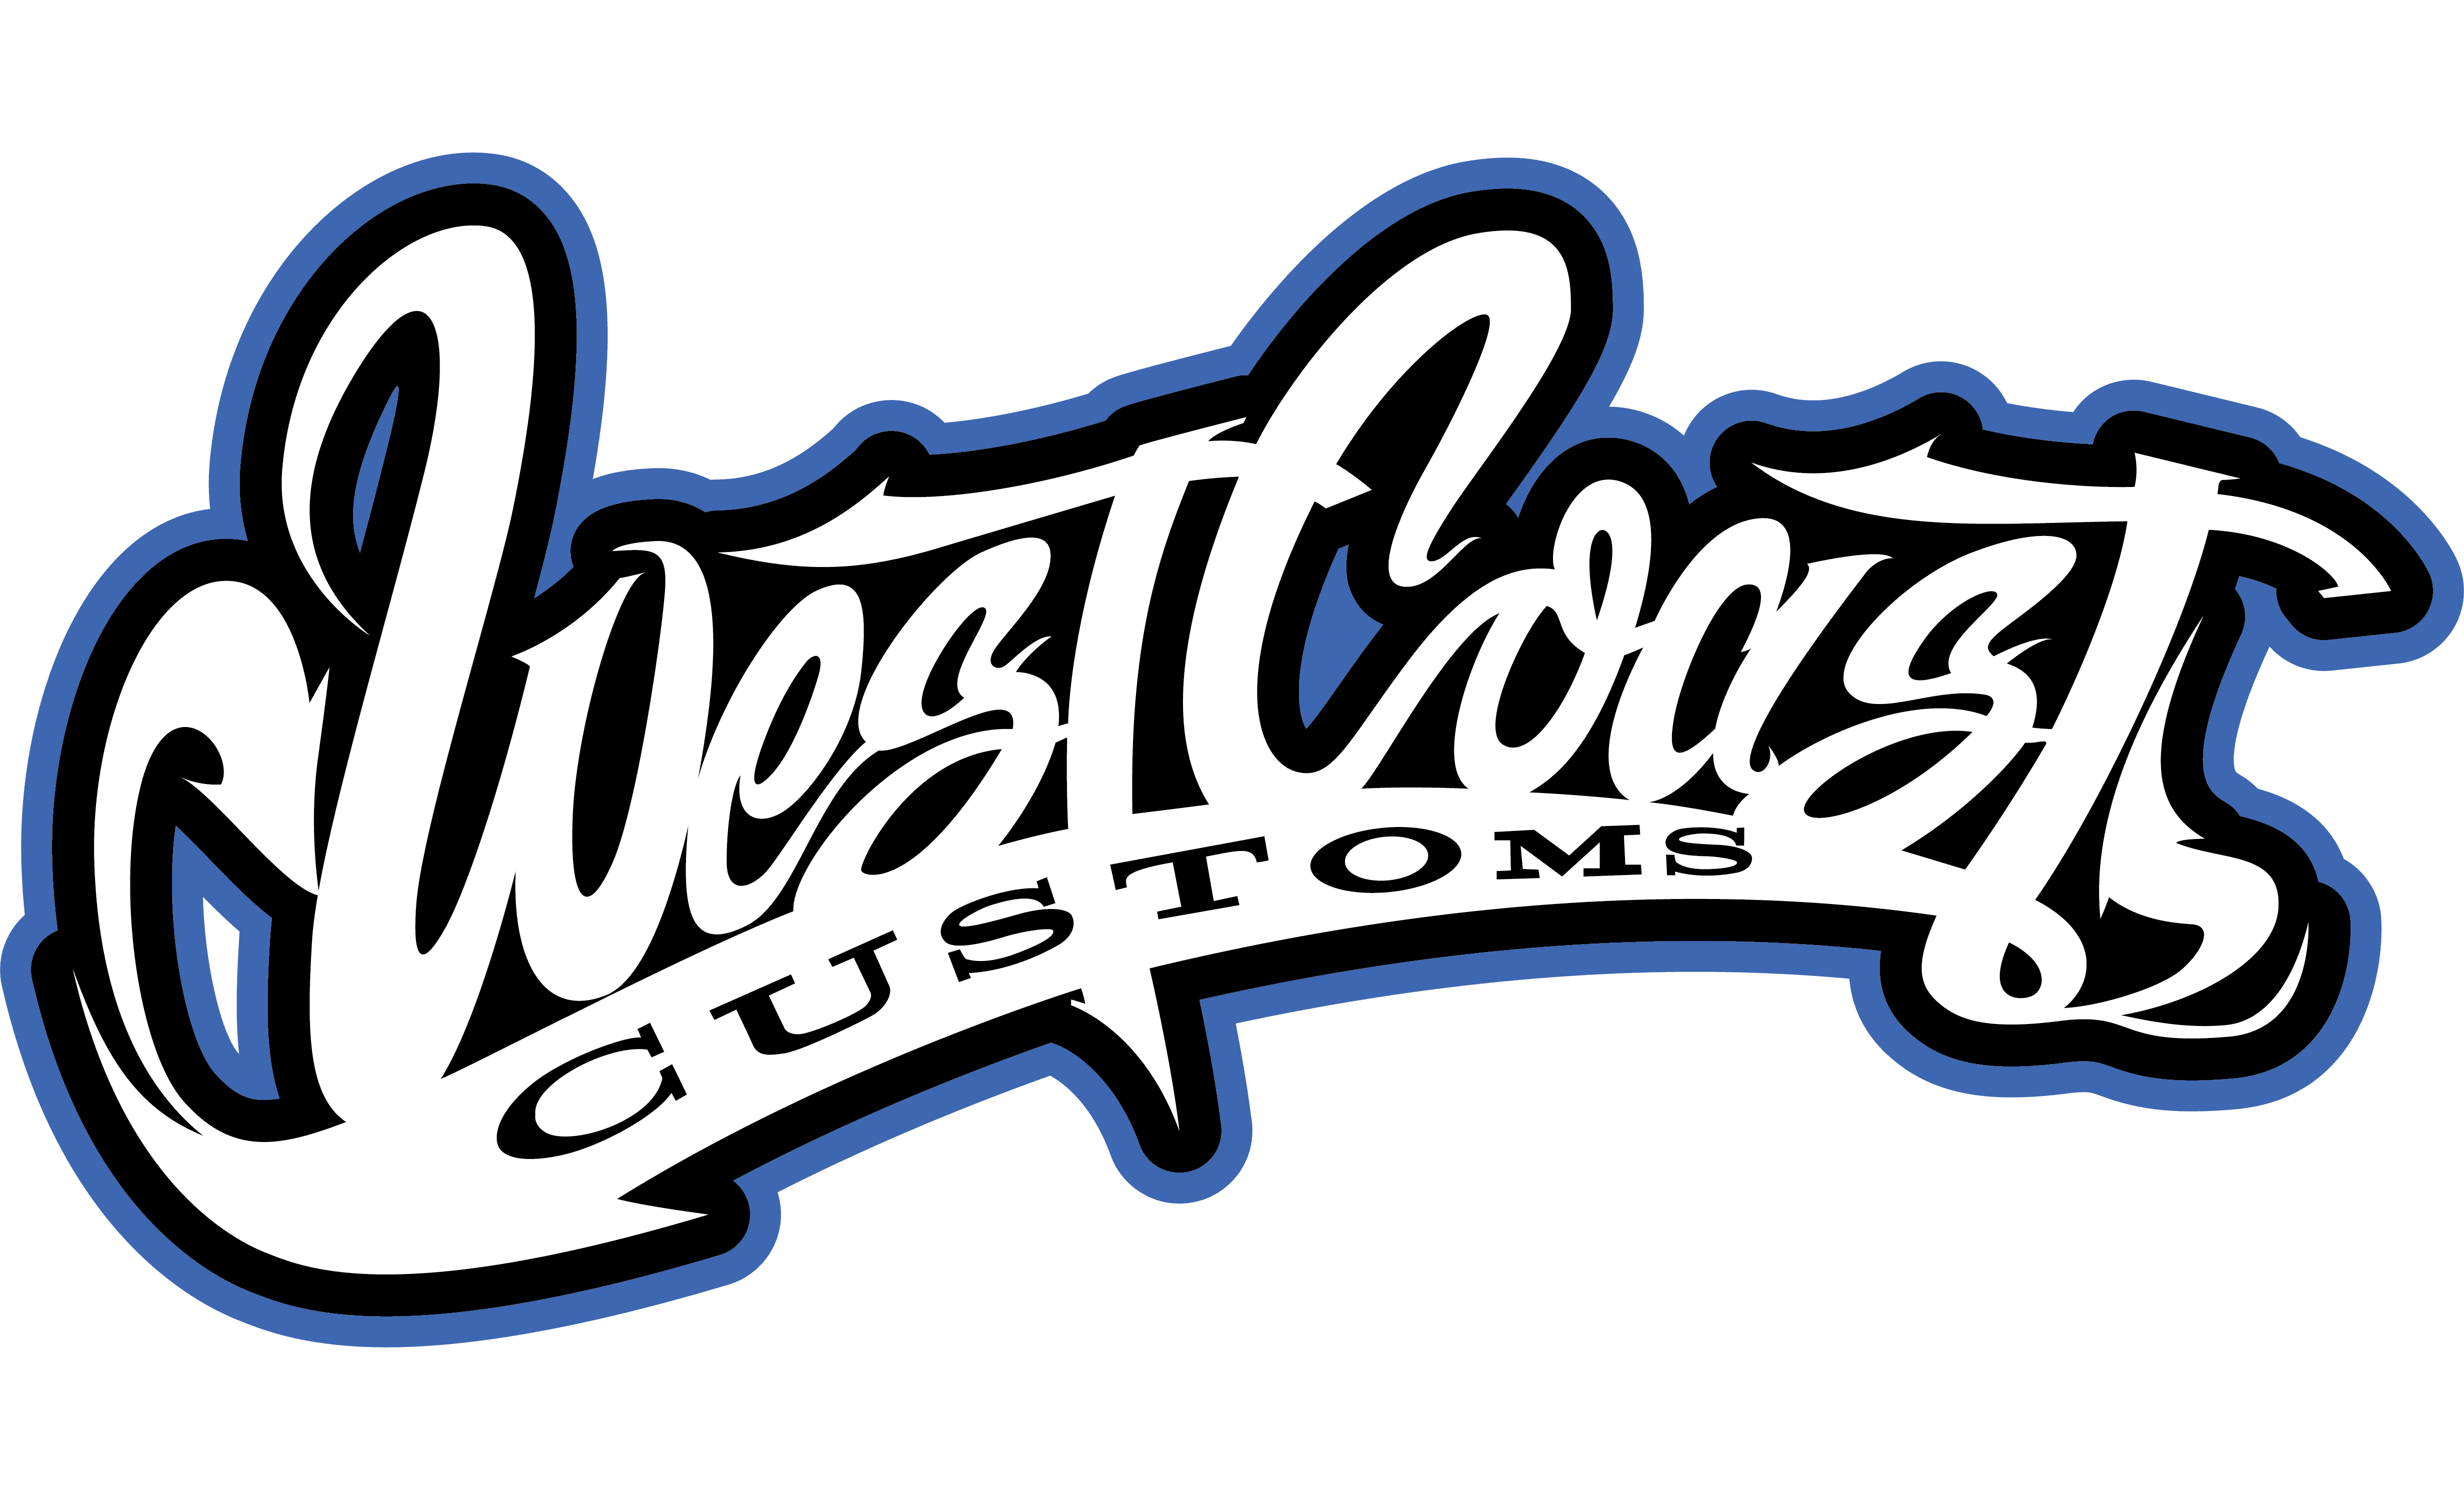 Компания кост. Вест Кост кастомс логотип. Los Santos Customs эмблема. Райан Вест Кост кастомс. West Coast Customs логотип вектор.